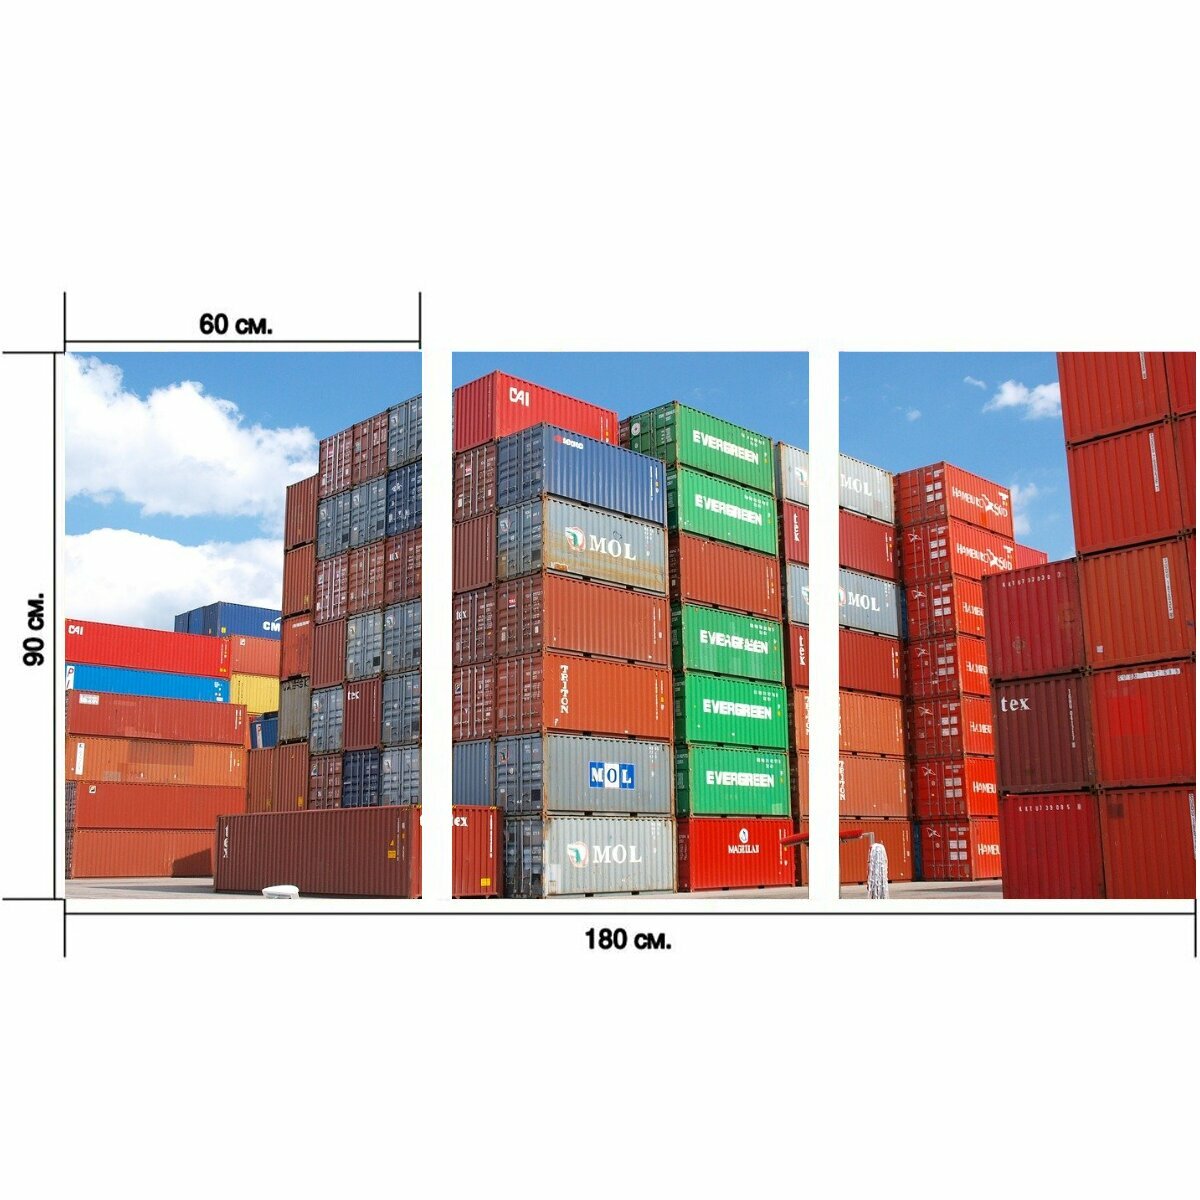 Модульный постер "Контейнер, груз, грузовой порт" 180 x 90 см. для интерьера